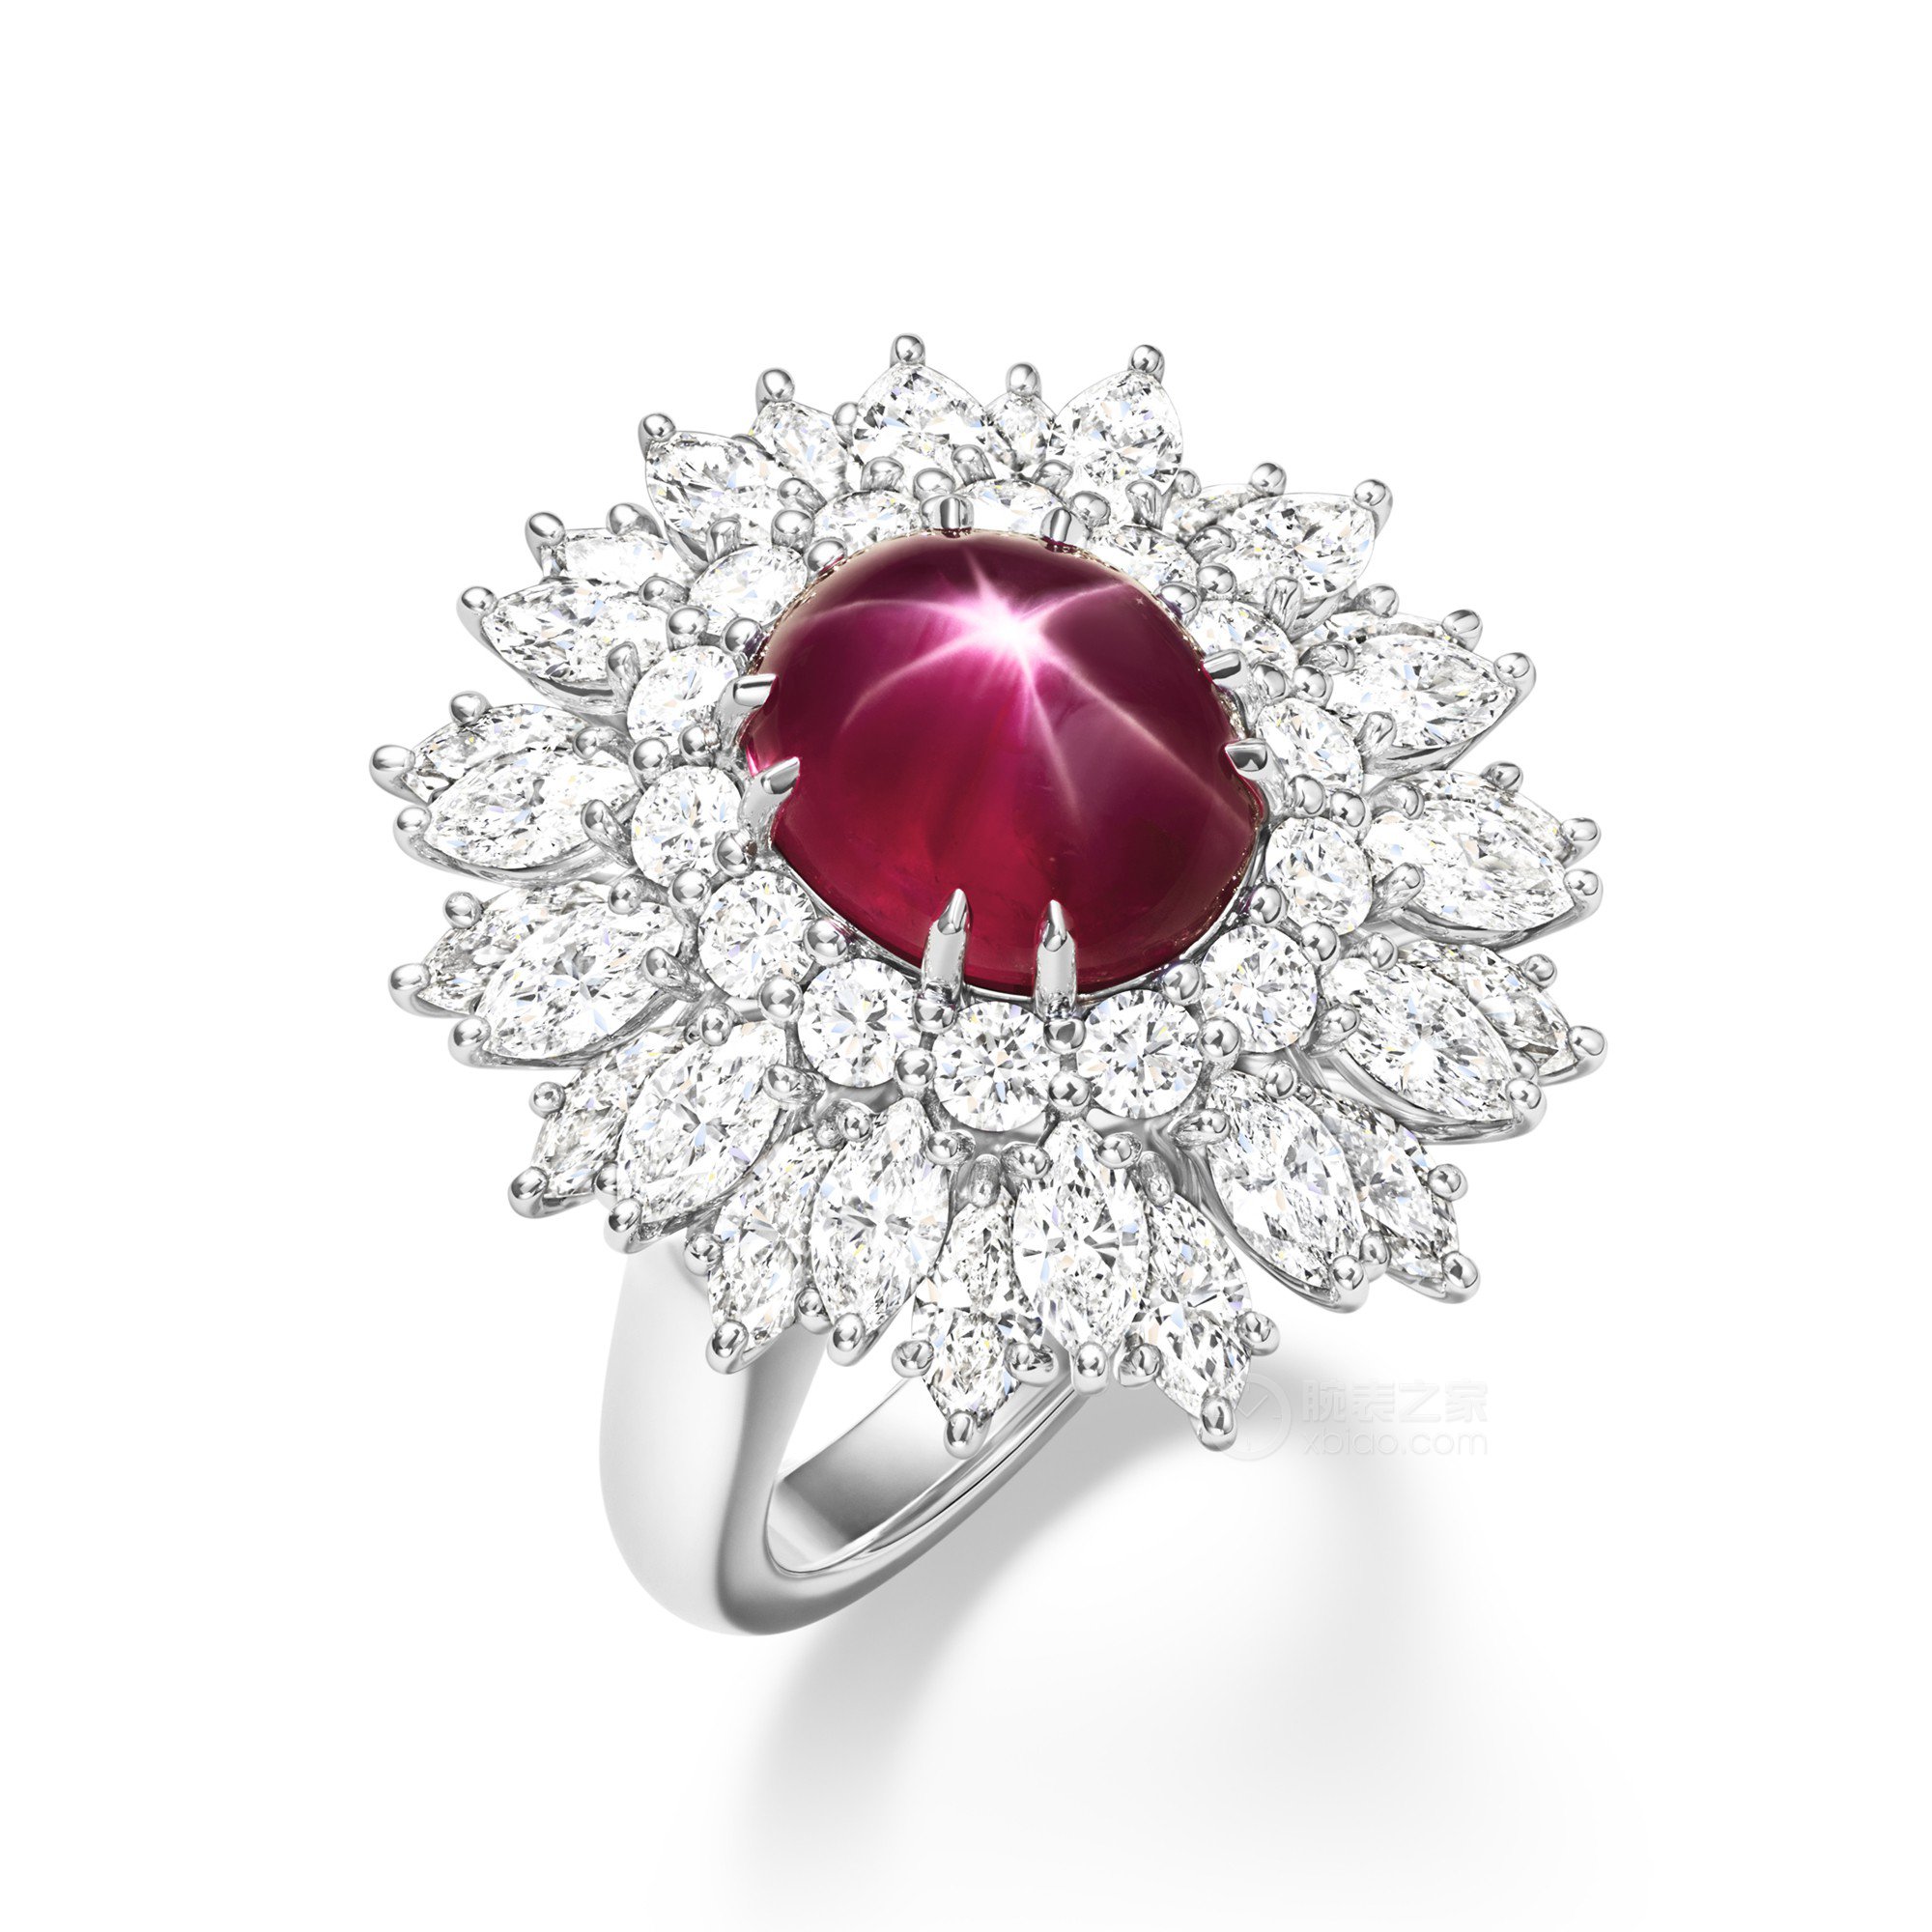 海瑞温斯顿MARVELOUS CREATIONS 高级珠宝星光红宝石戒指戒指